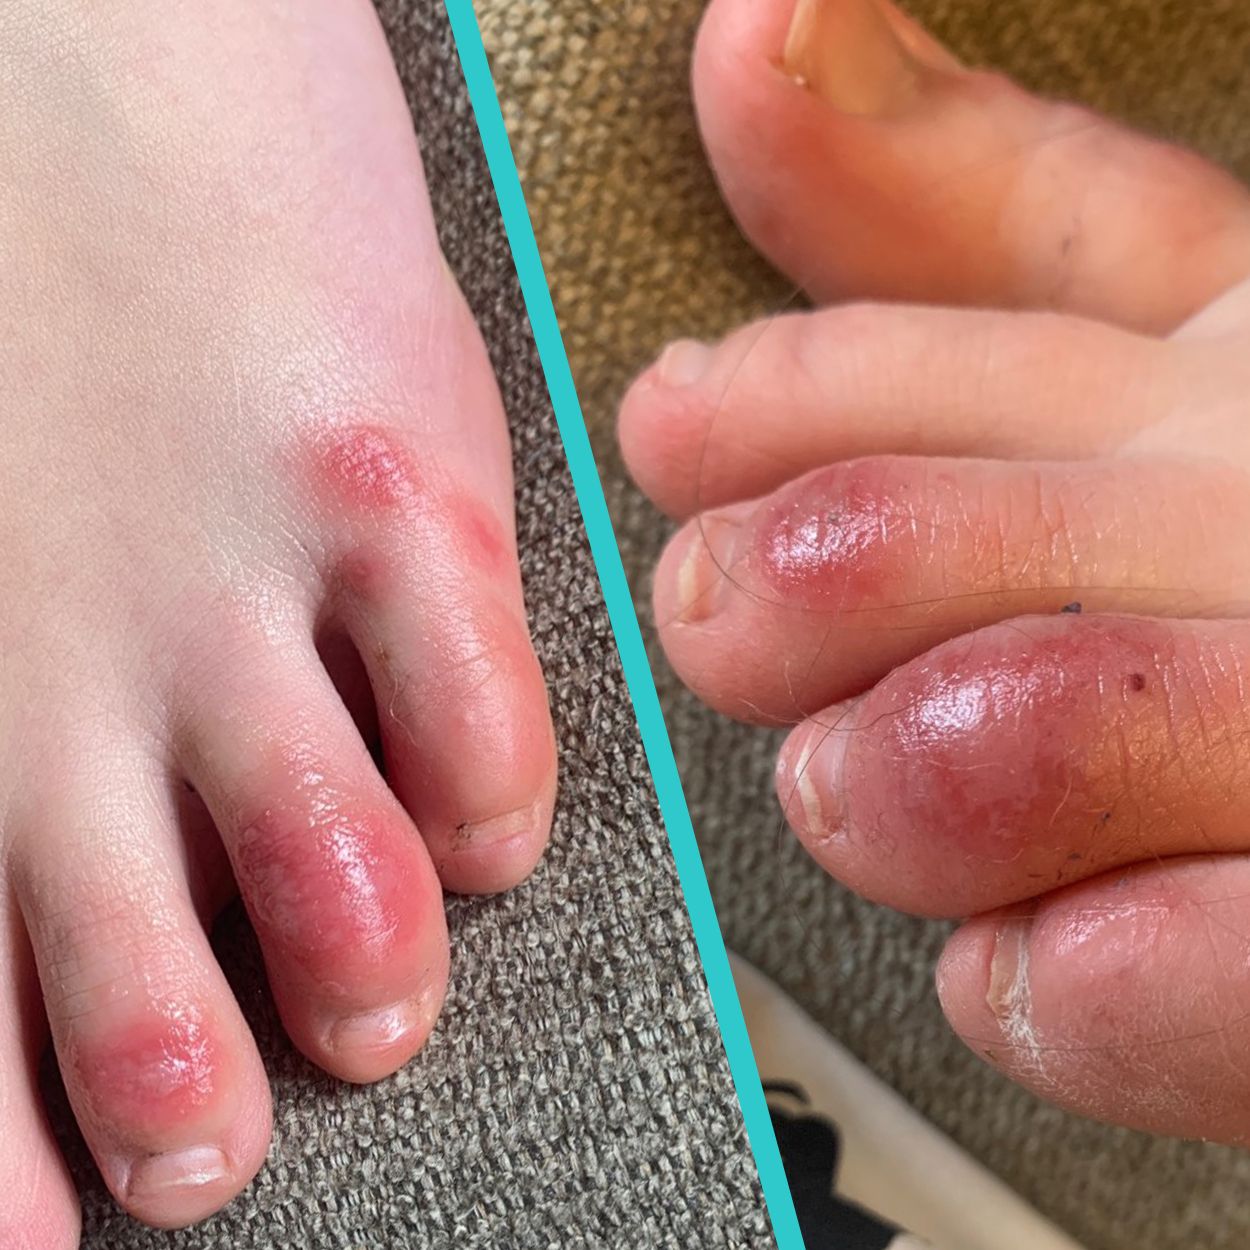 broken skin under toes